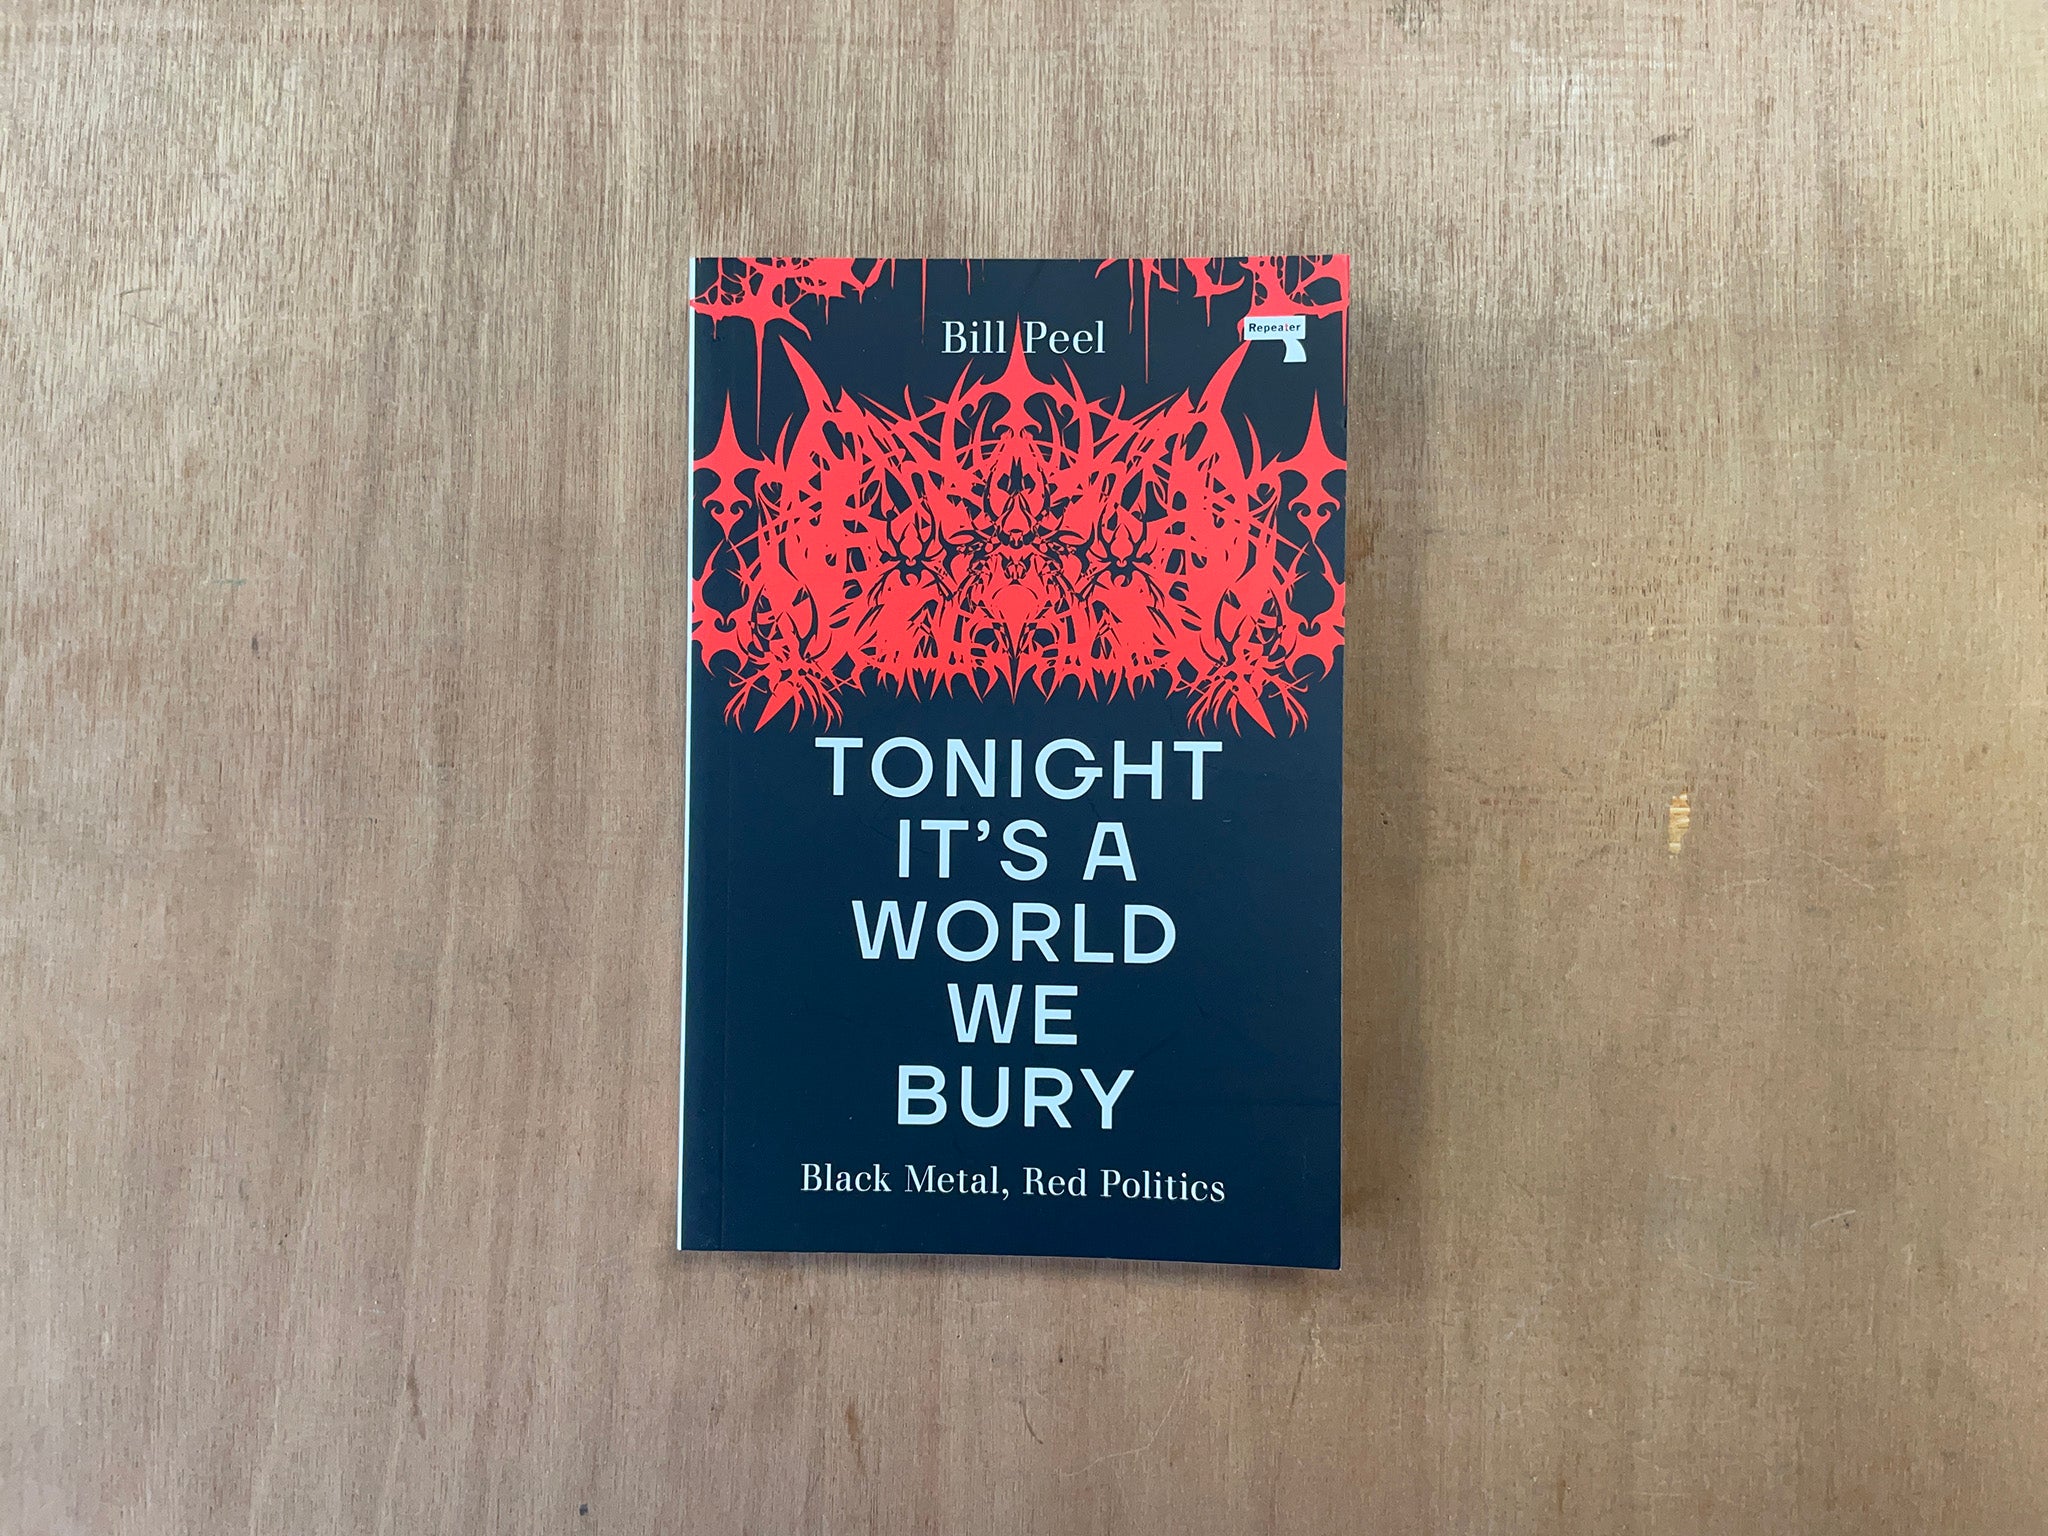 TONIGHT IT’S A WORLD WE BURY: BLACK METAL, RED POLITICS by Bill Peel